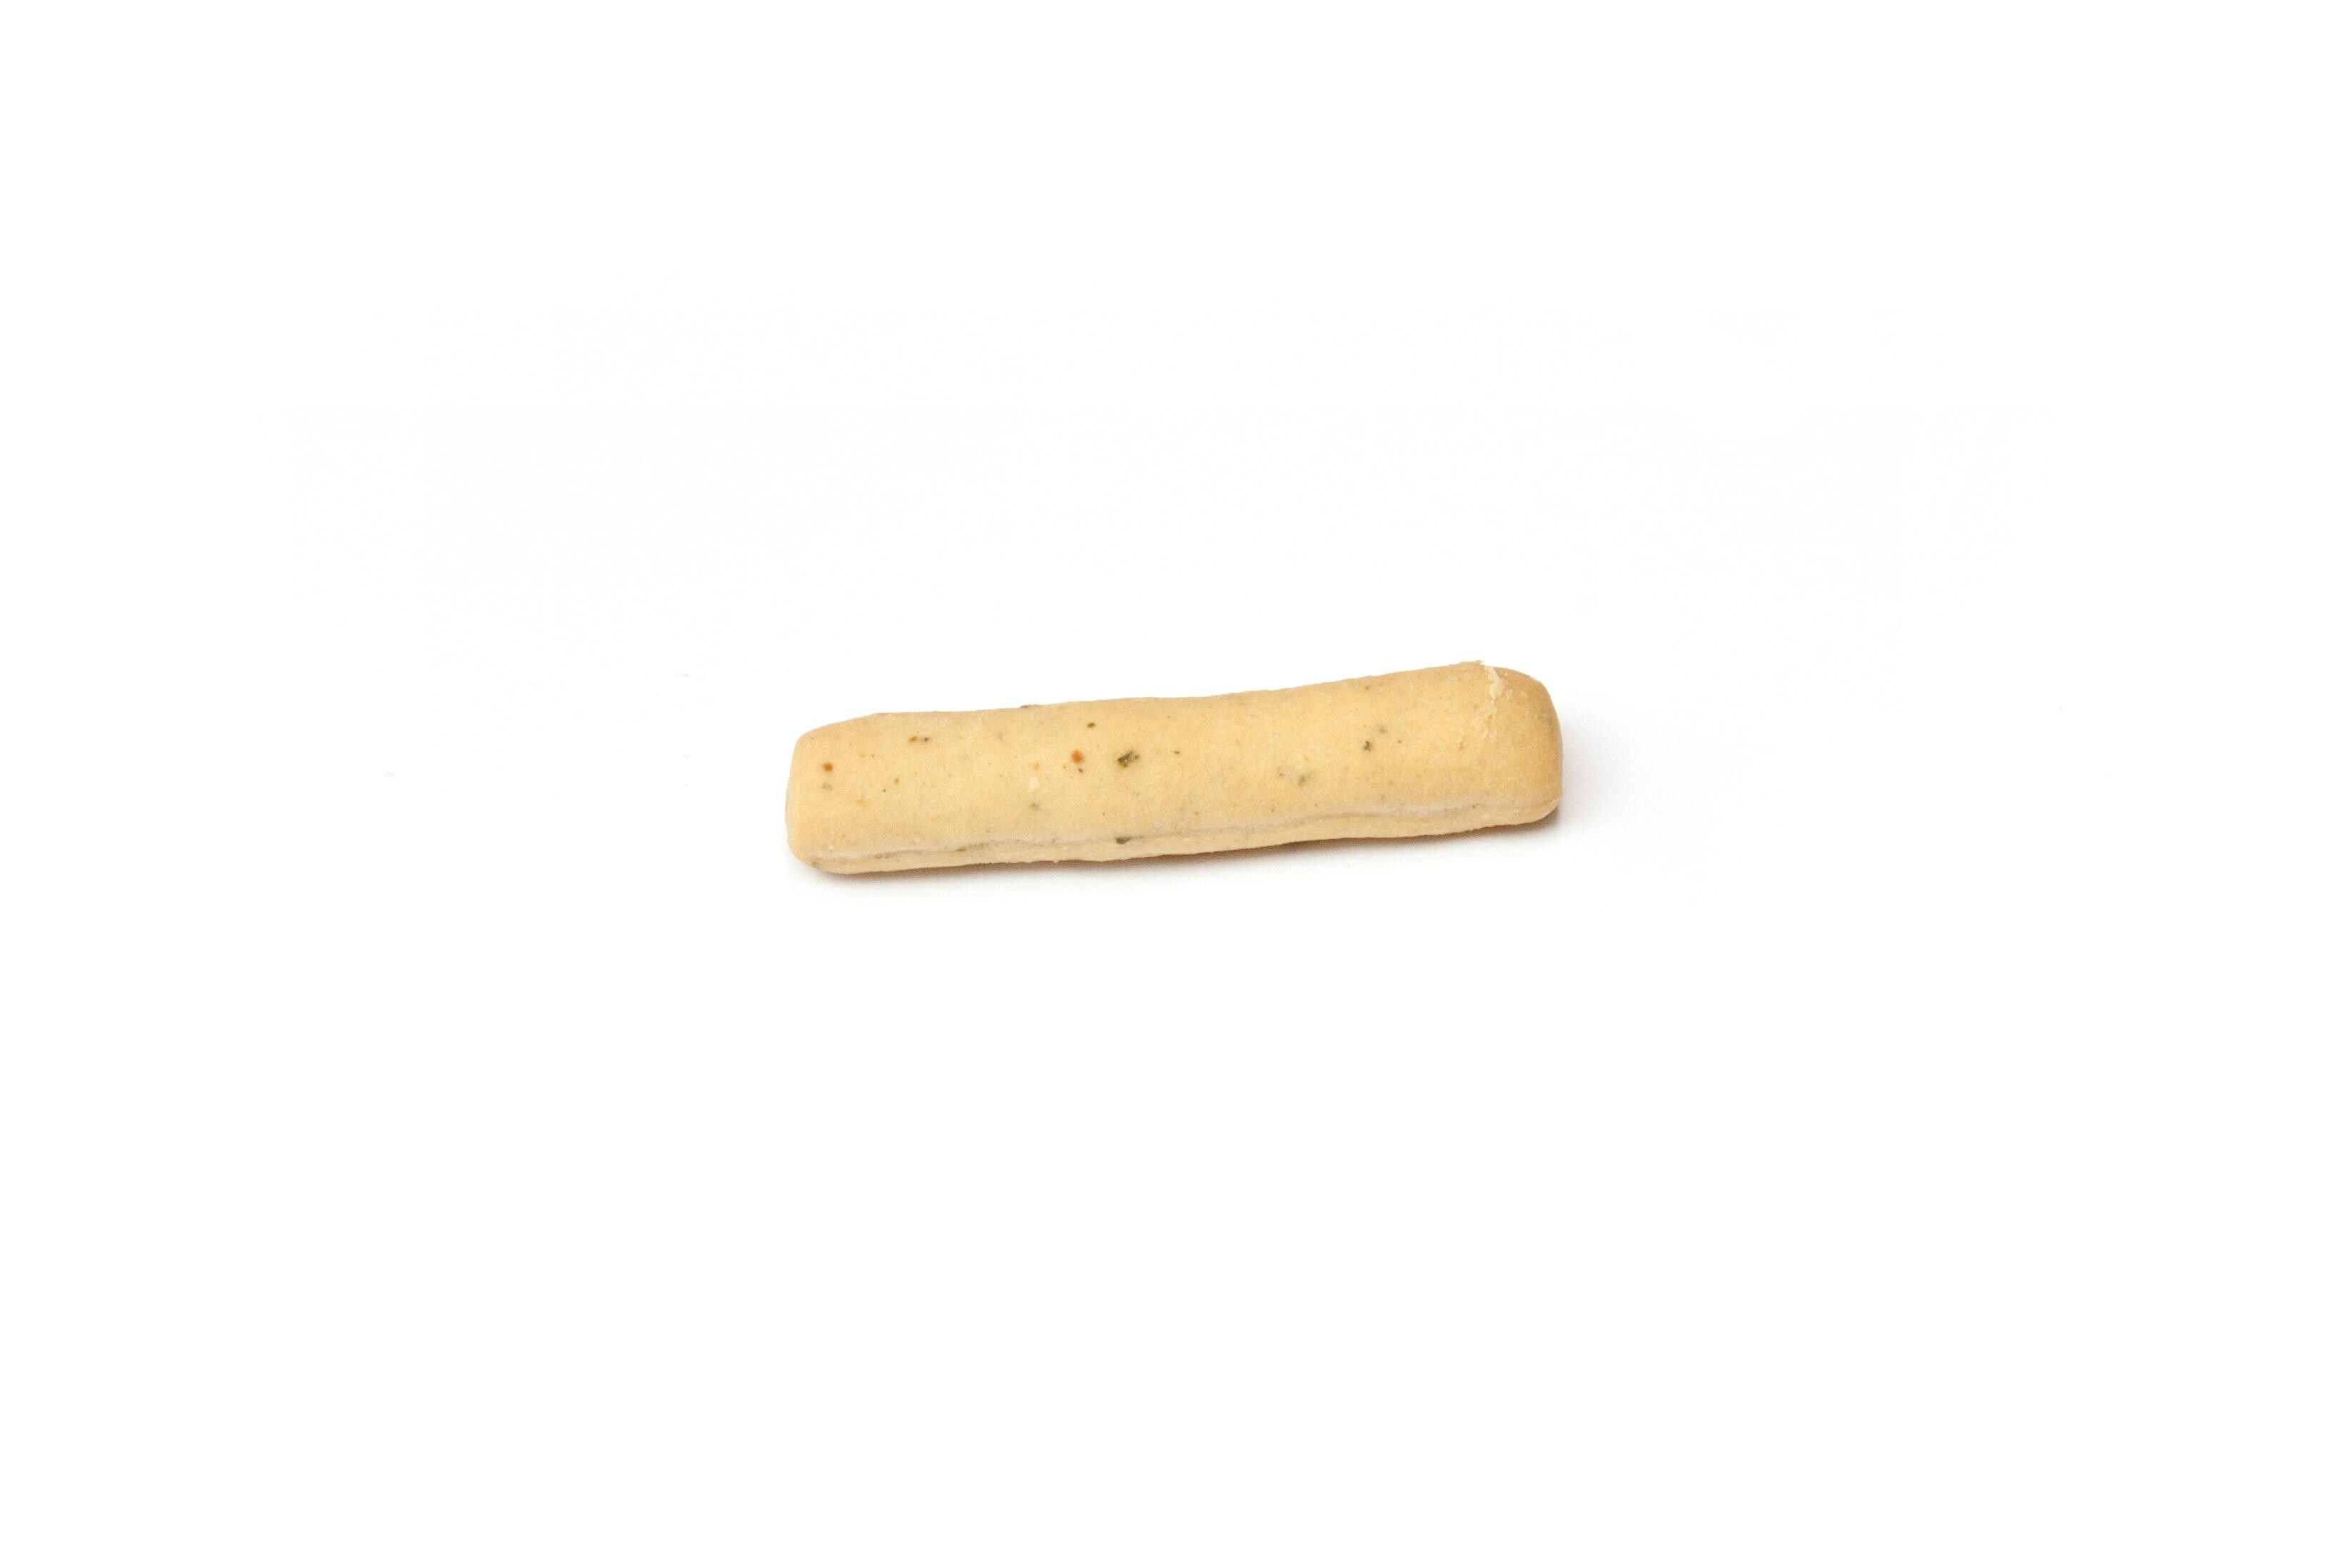 Mini Grissini breadsticks Apero 6.5cm Pesto 1kg DV Foods